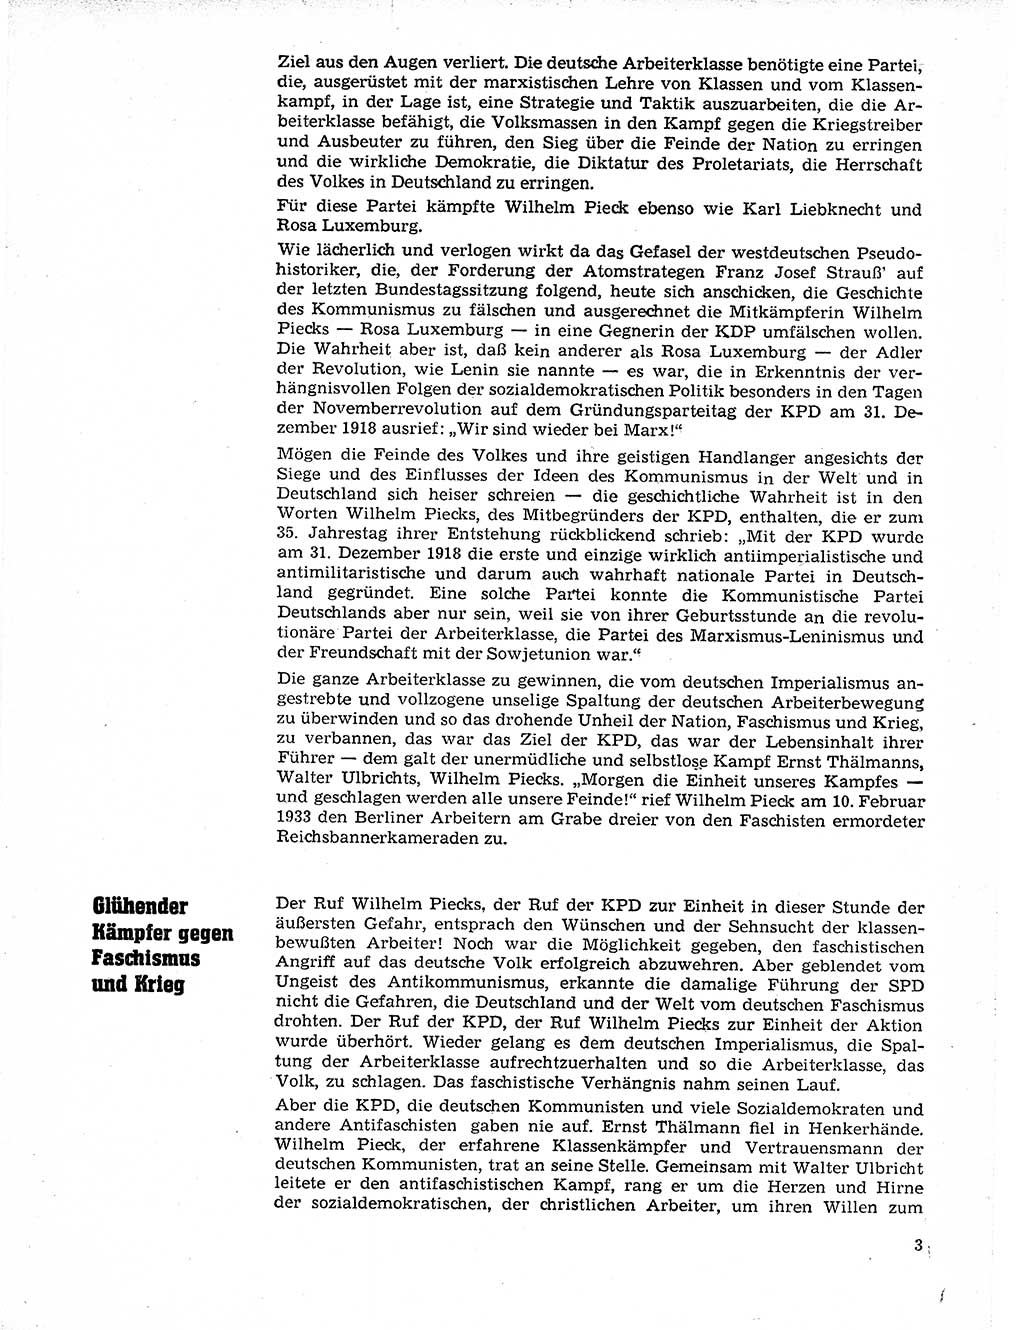 Neuer Weg (NW), Organ des Zentralkomitees (ZK) der SED (Sozialistische Einheitspartei Deutschlands) fÃ¼r Fragen des Parteilebens, 21. Jahrgang [Deutsche Demokratische Republik (DDR)] 1966, Seite 3 (NW ZK SED DDR 1966, S. 3)